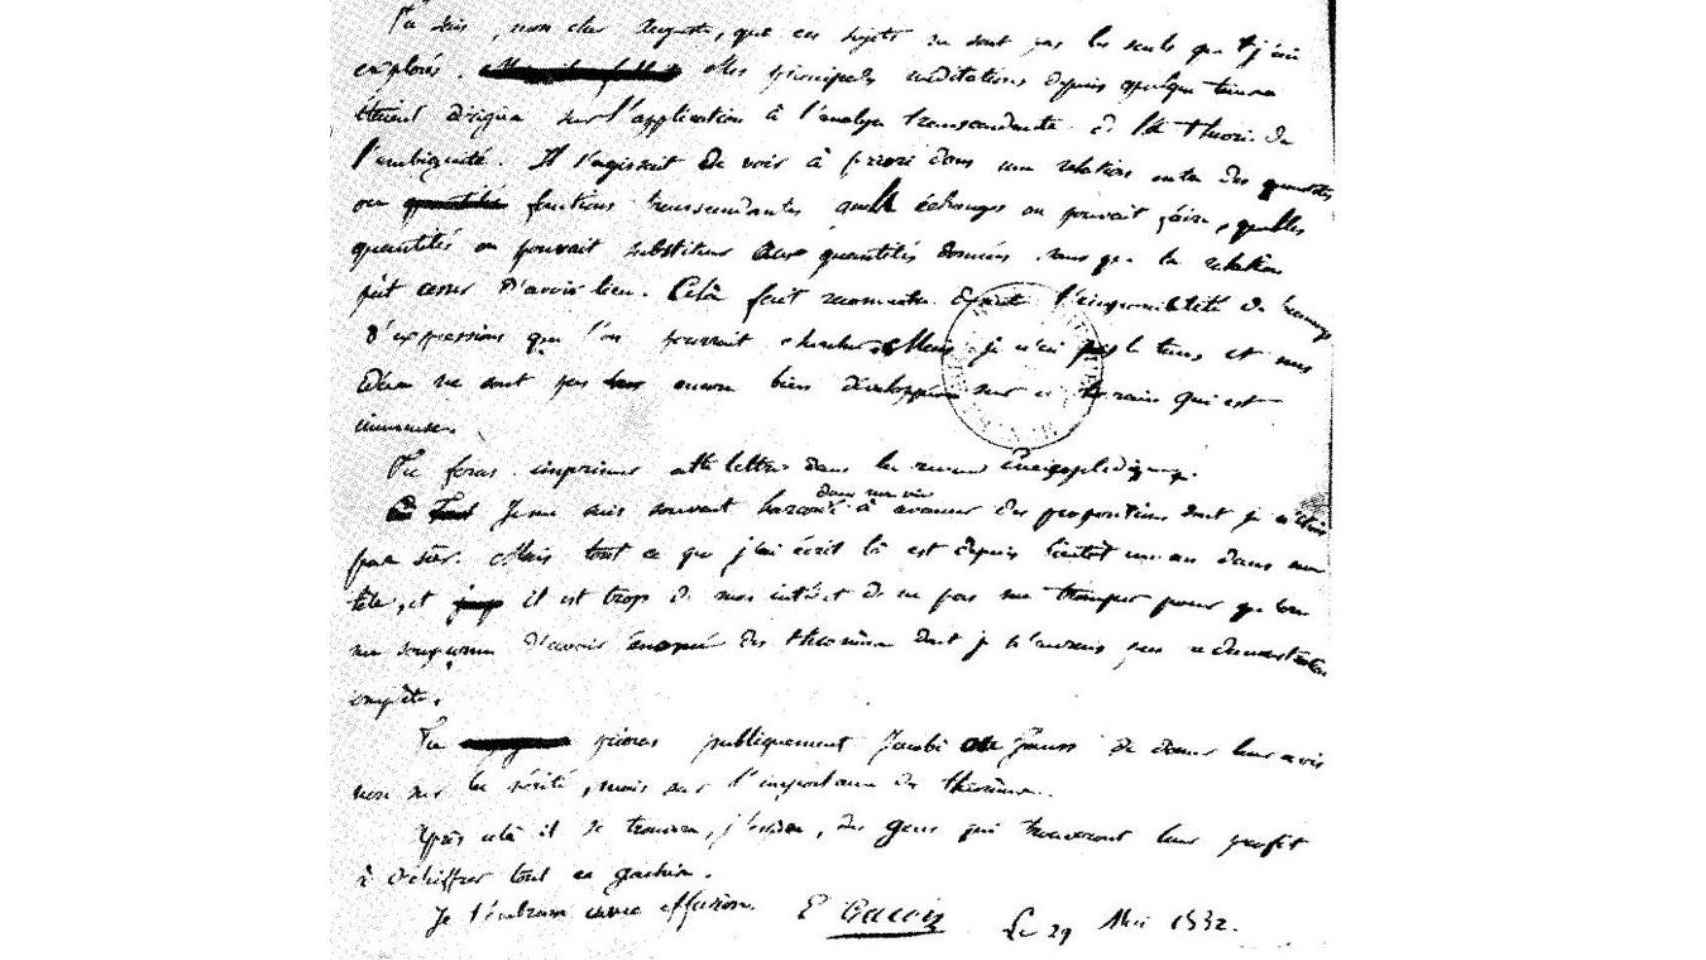 La última carta de Galois a su amigo Chevalier: Quizás alguien le saque partido a descifrar este embrollo